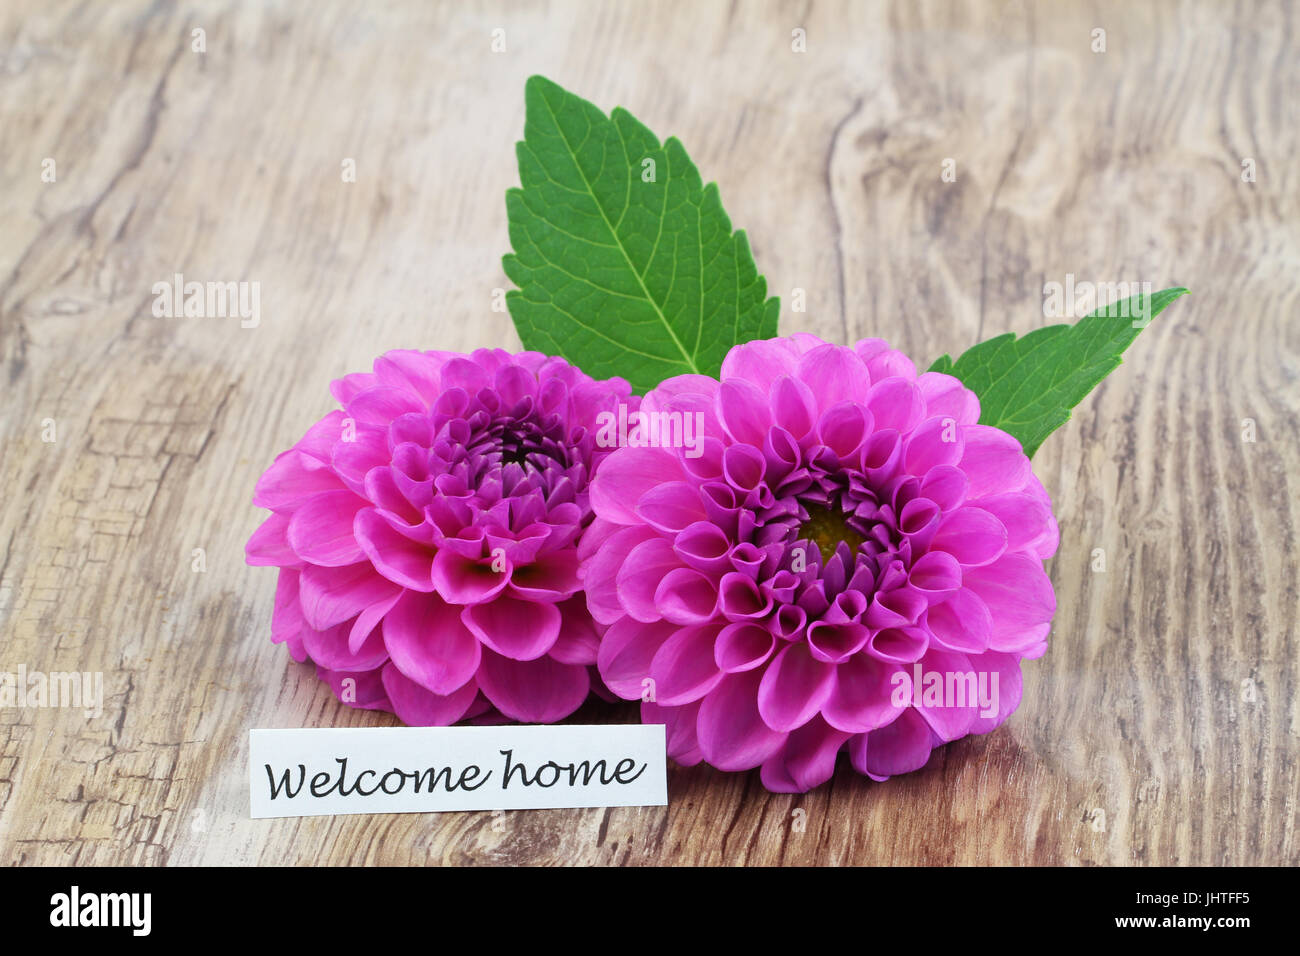 Bienvenue accueil carte avec deux fleurs dahlia rose sur la surface en bois Banque D'Images